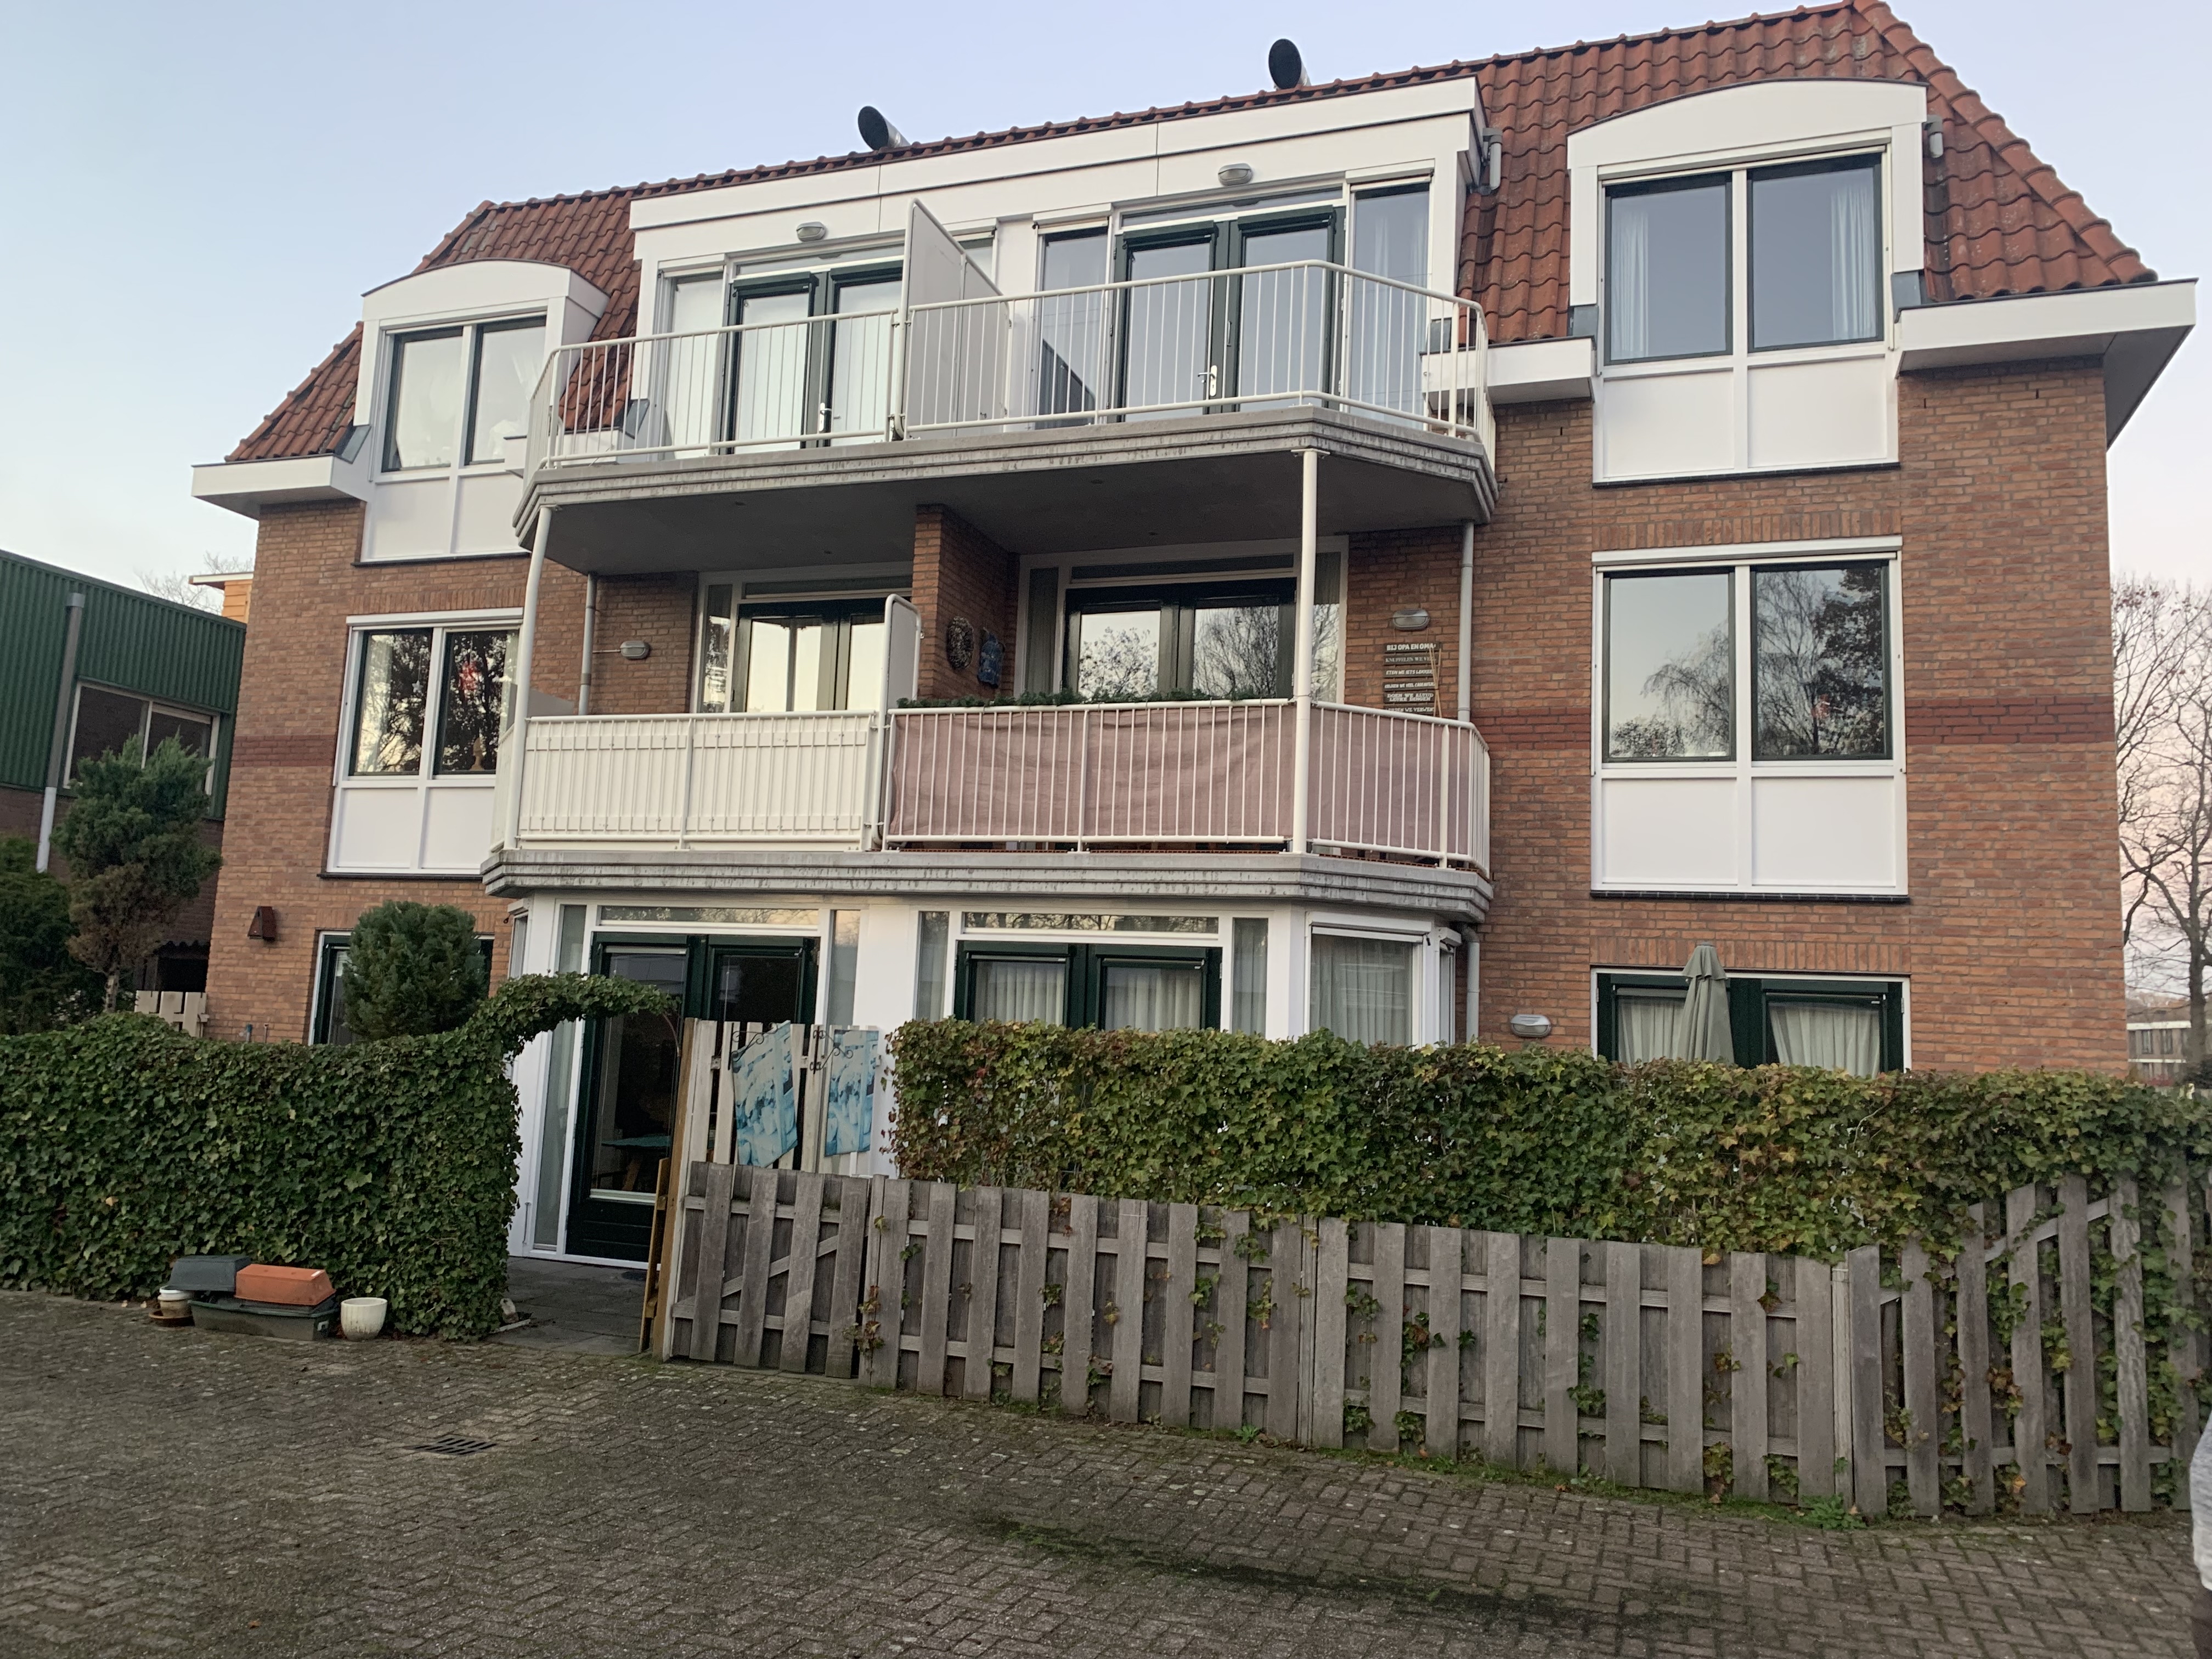 Groenstraat 3, c5, 4847 AE Teteringen, Nederland